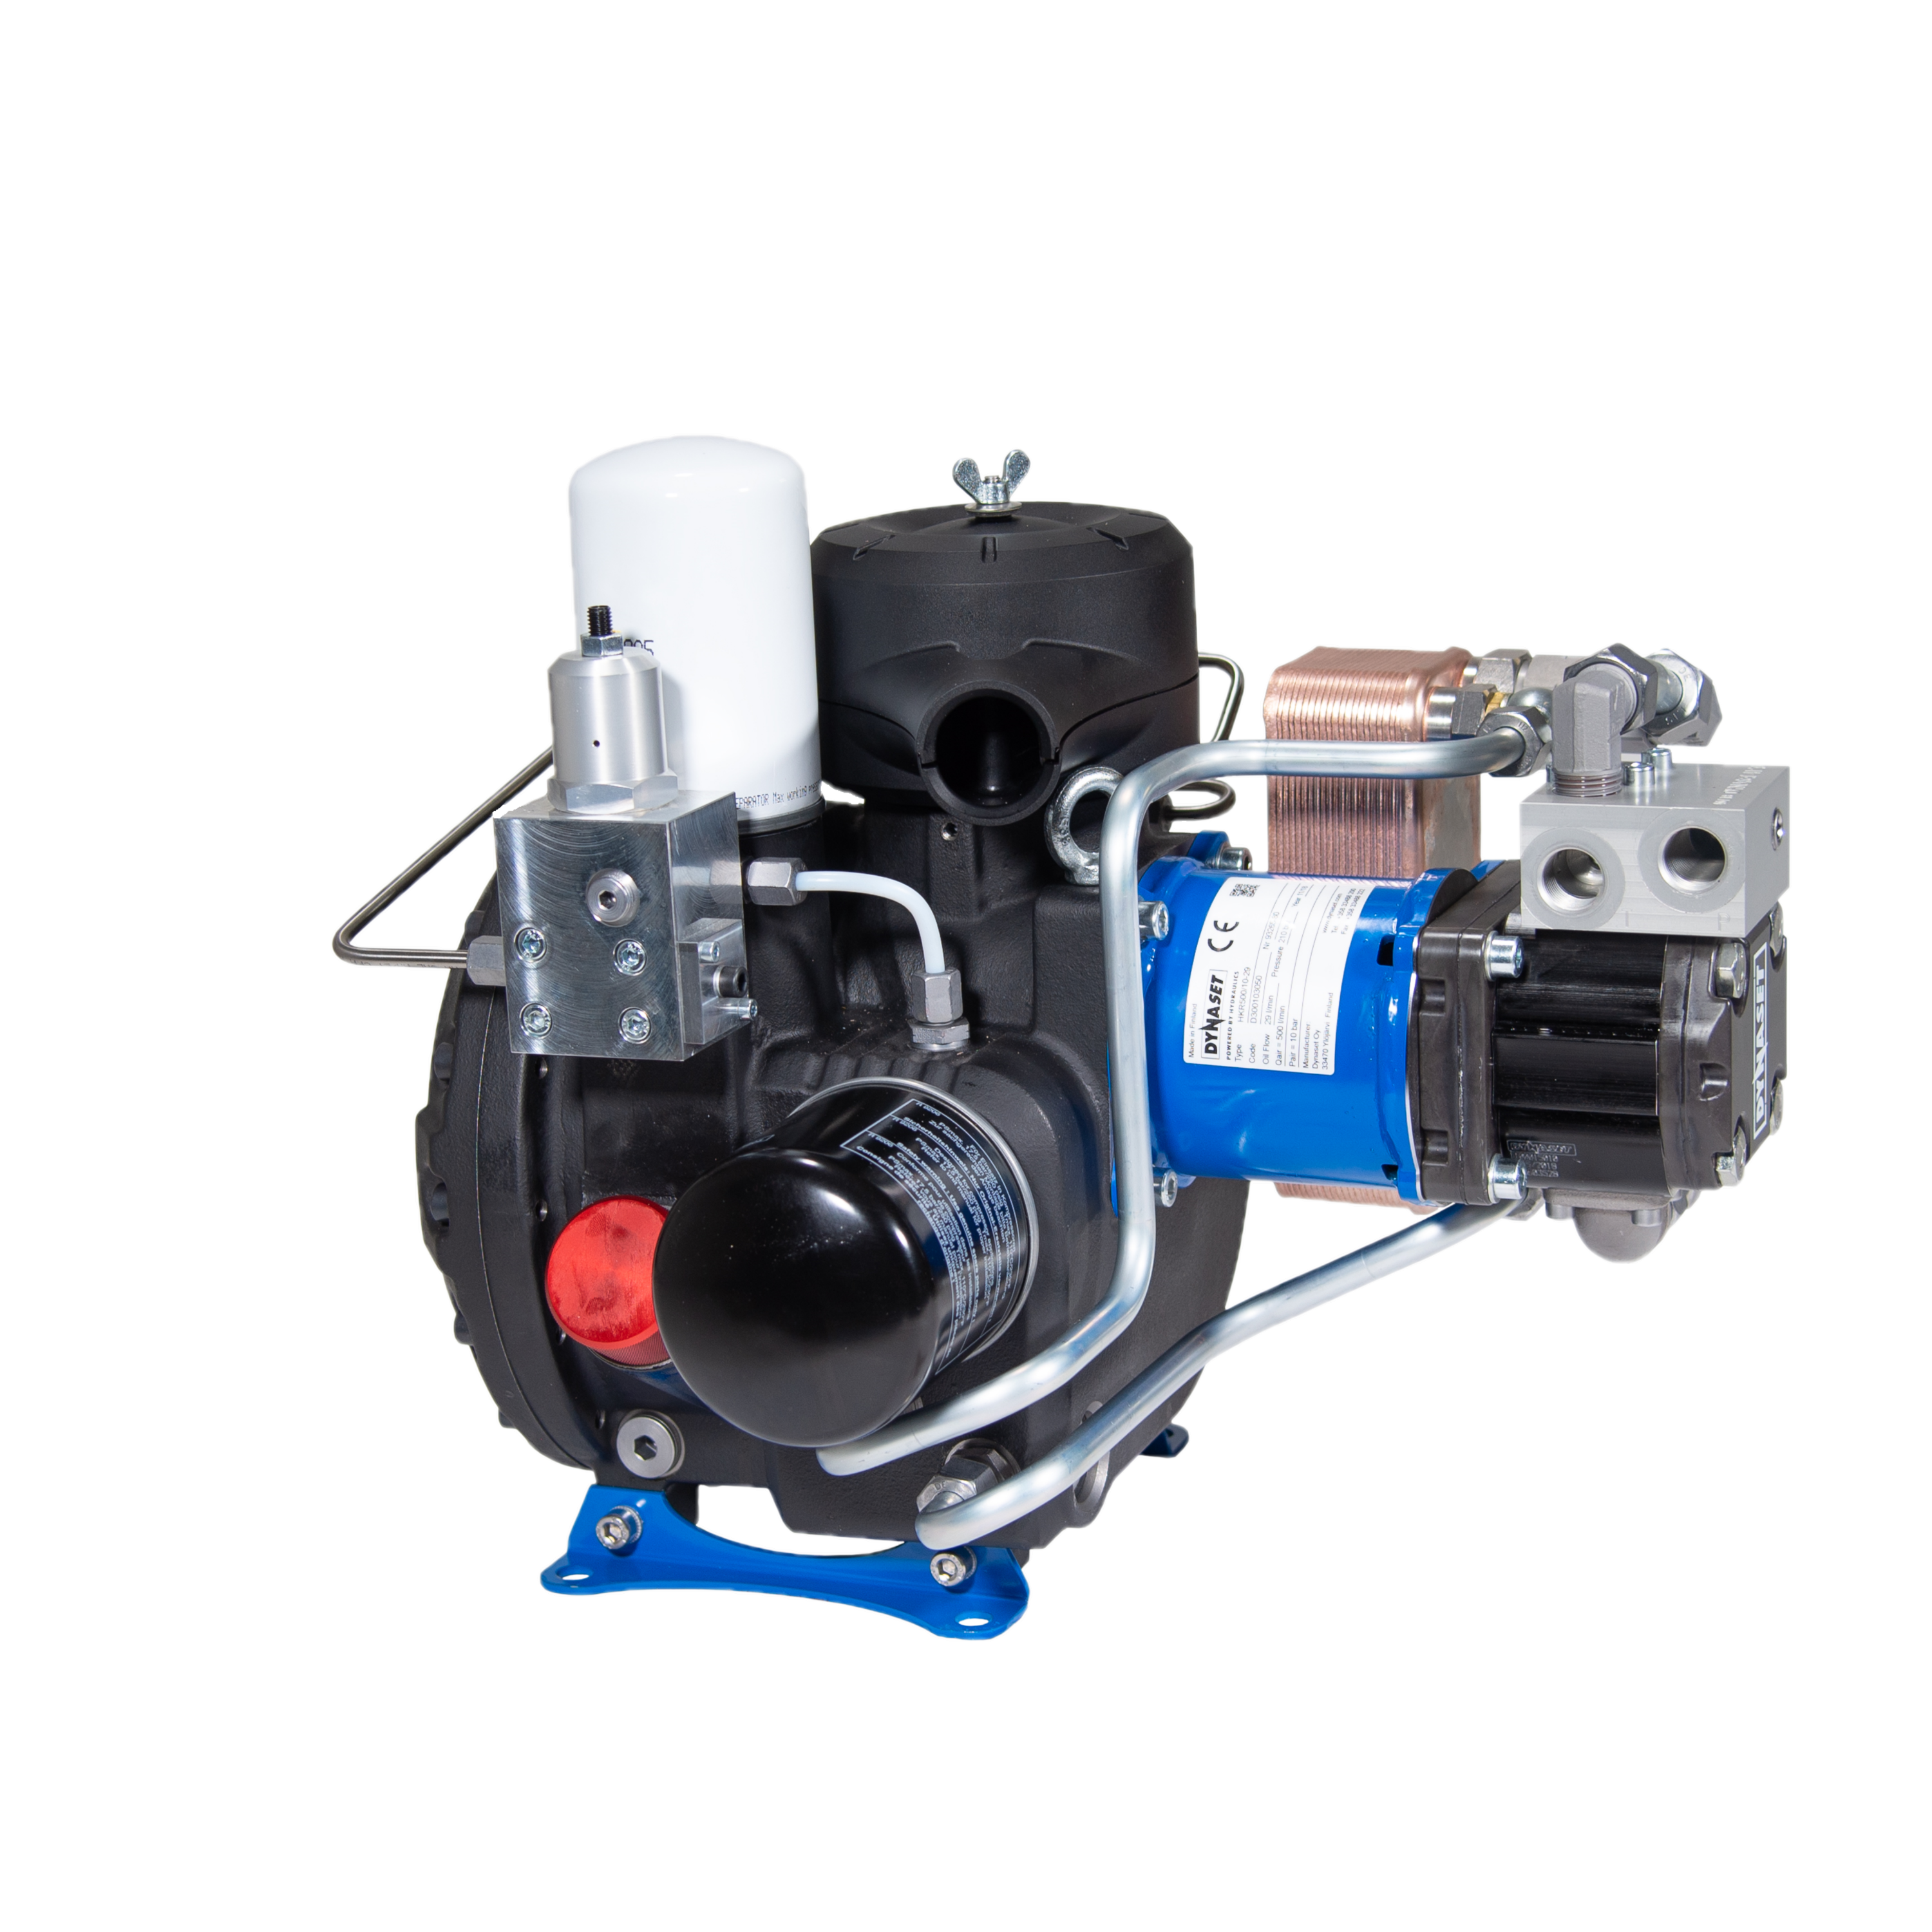 HKR500 - Hydraulisch angetriebener Druckluft-Schraubenkompressor 500 L/min. bei max. 10 bar (145 PSI)